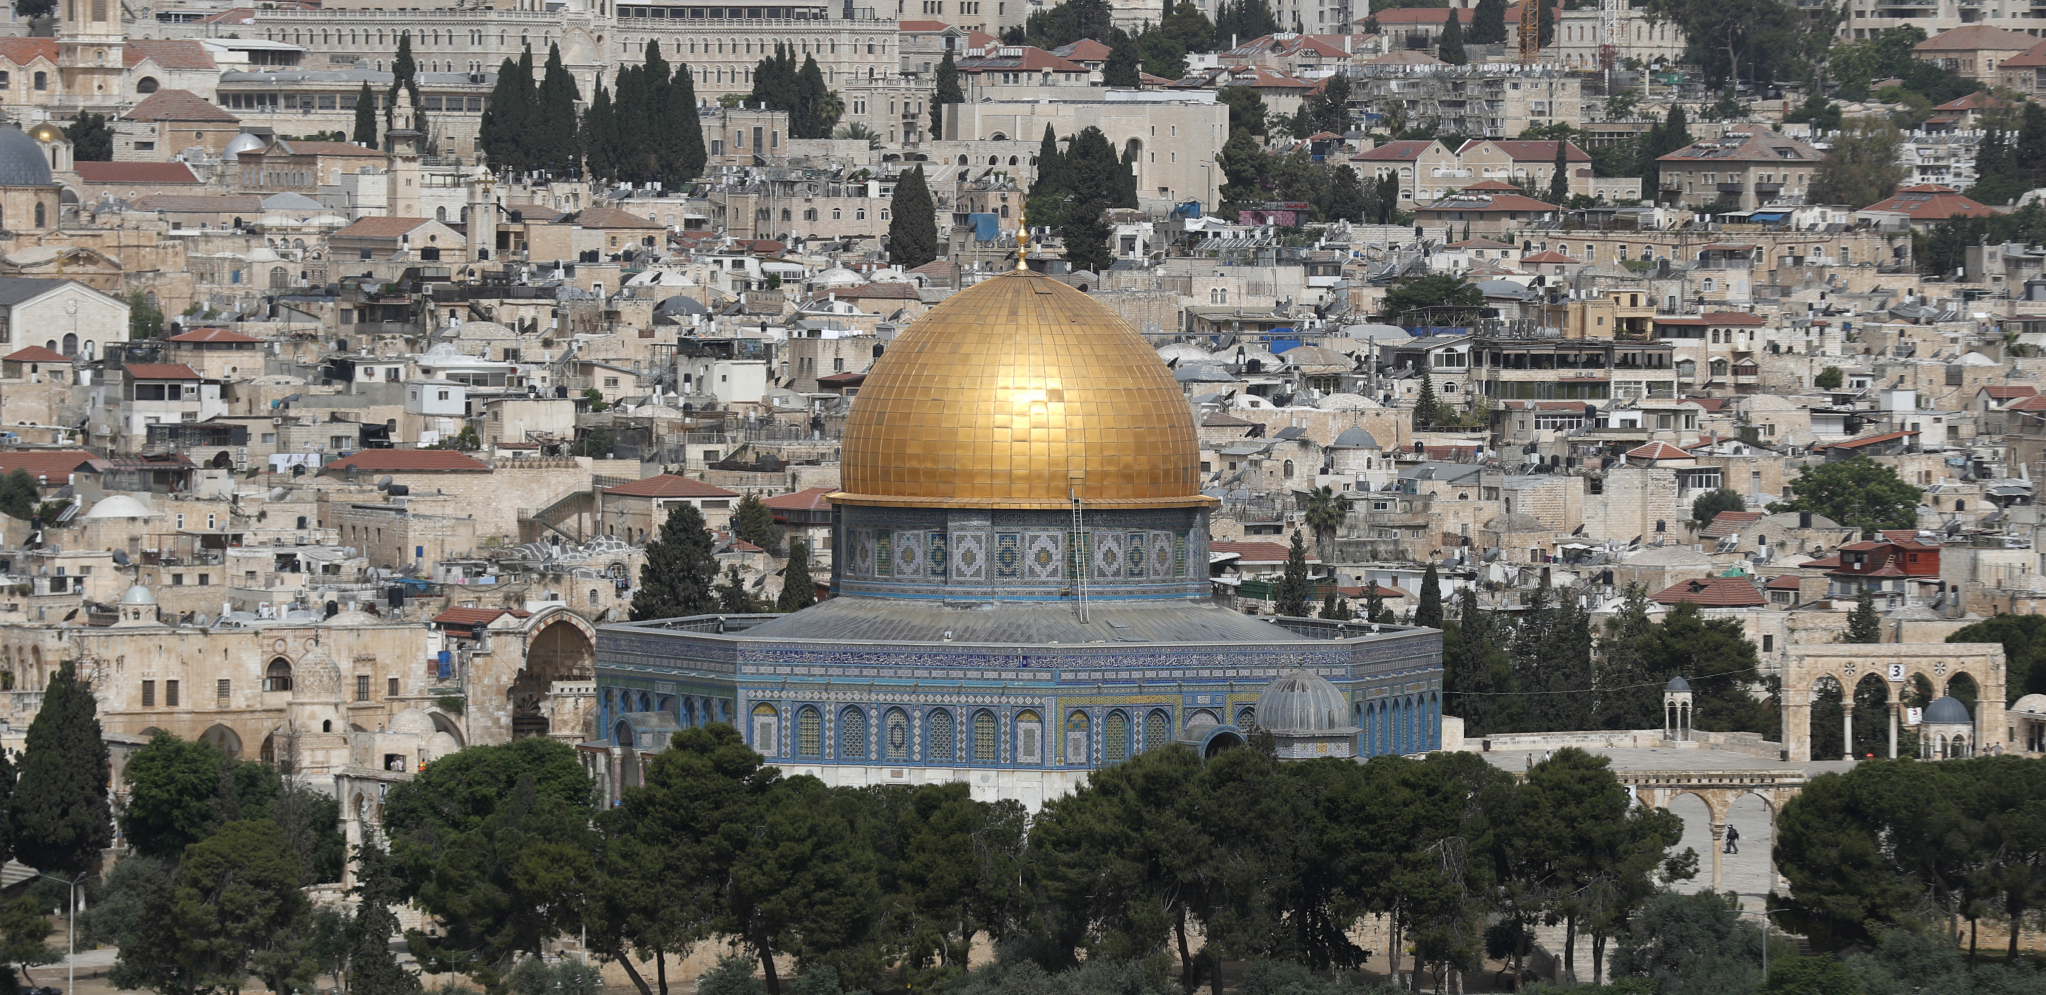 Sukobi na Hramovnoj gori u Jerusalimu